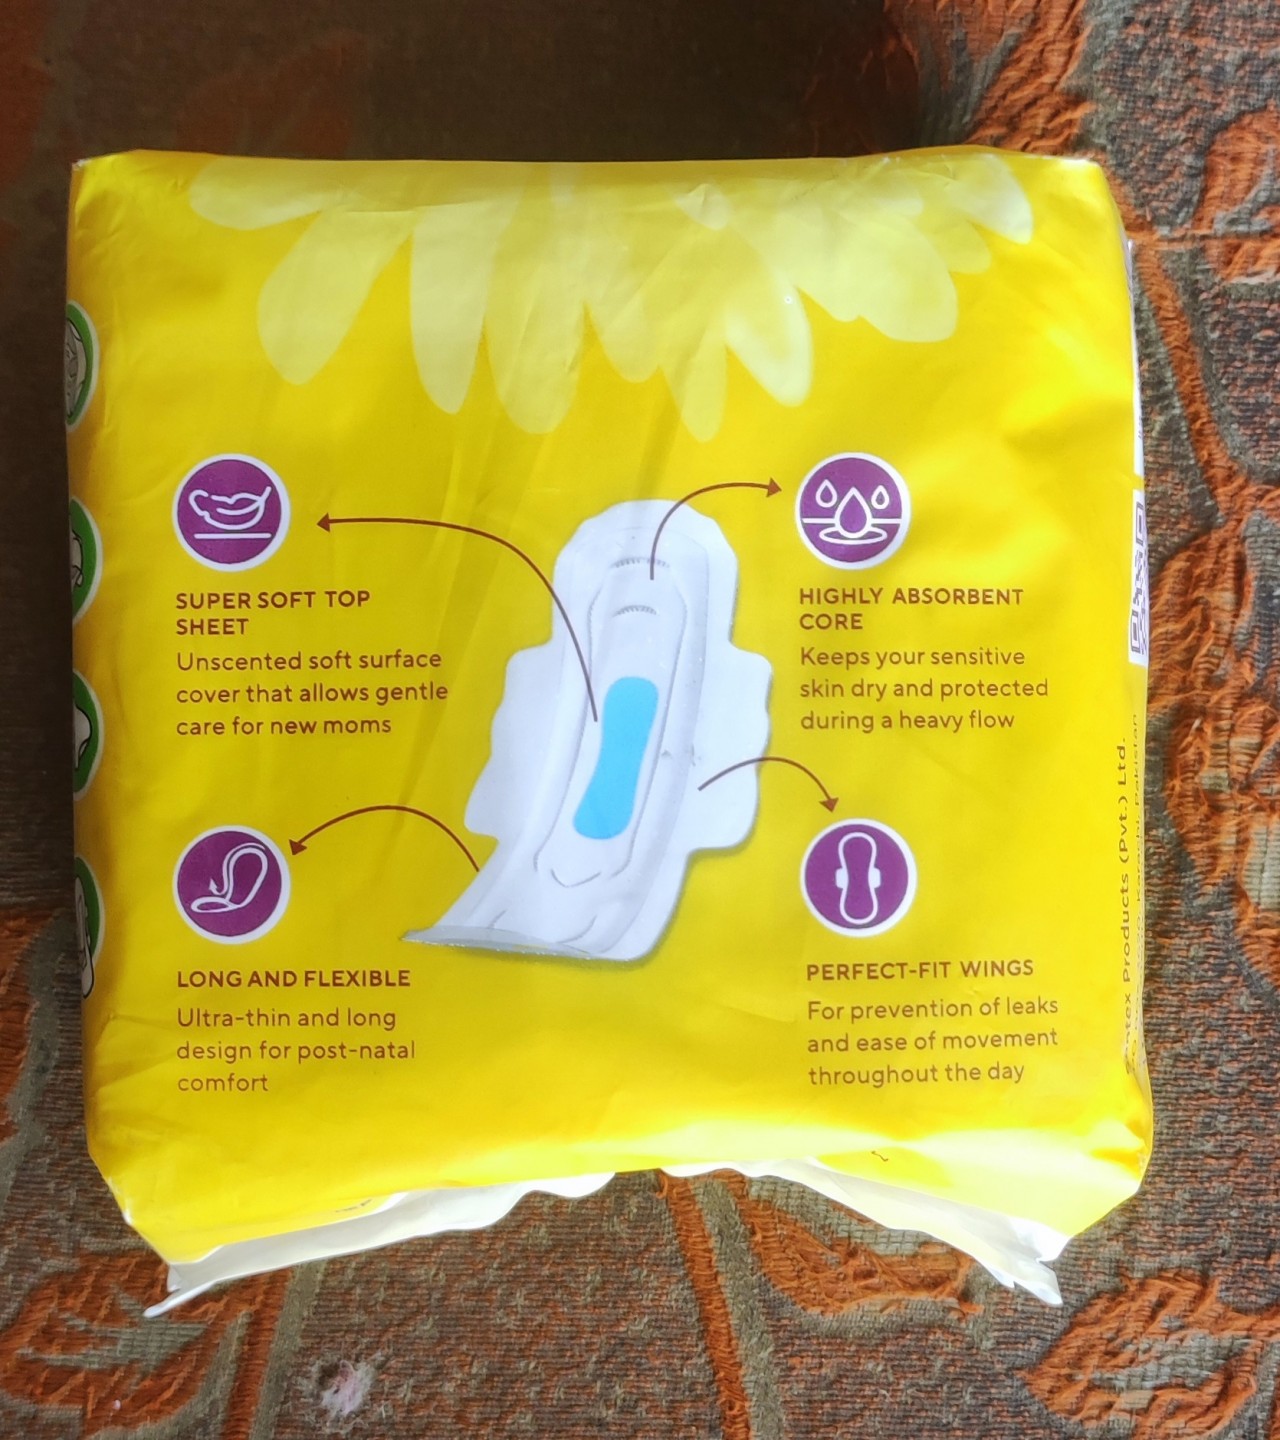 Mother's comfort Ulta pads for women